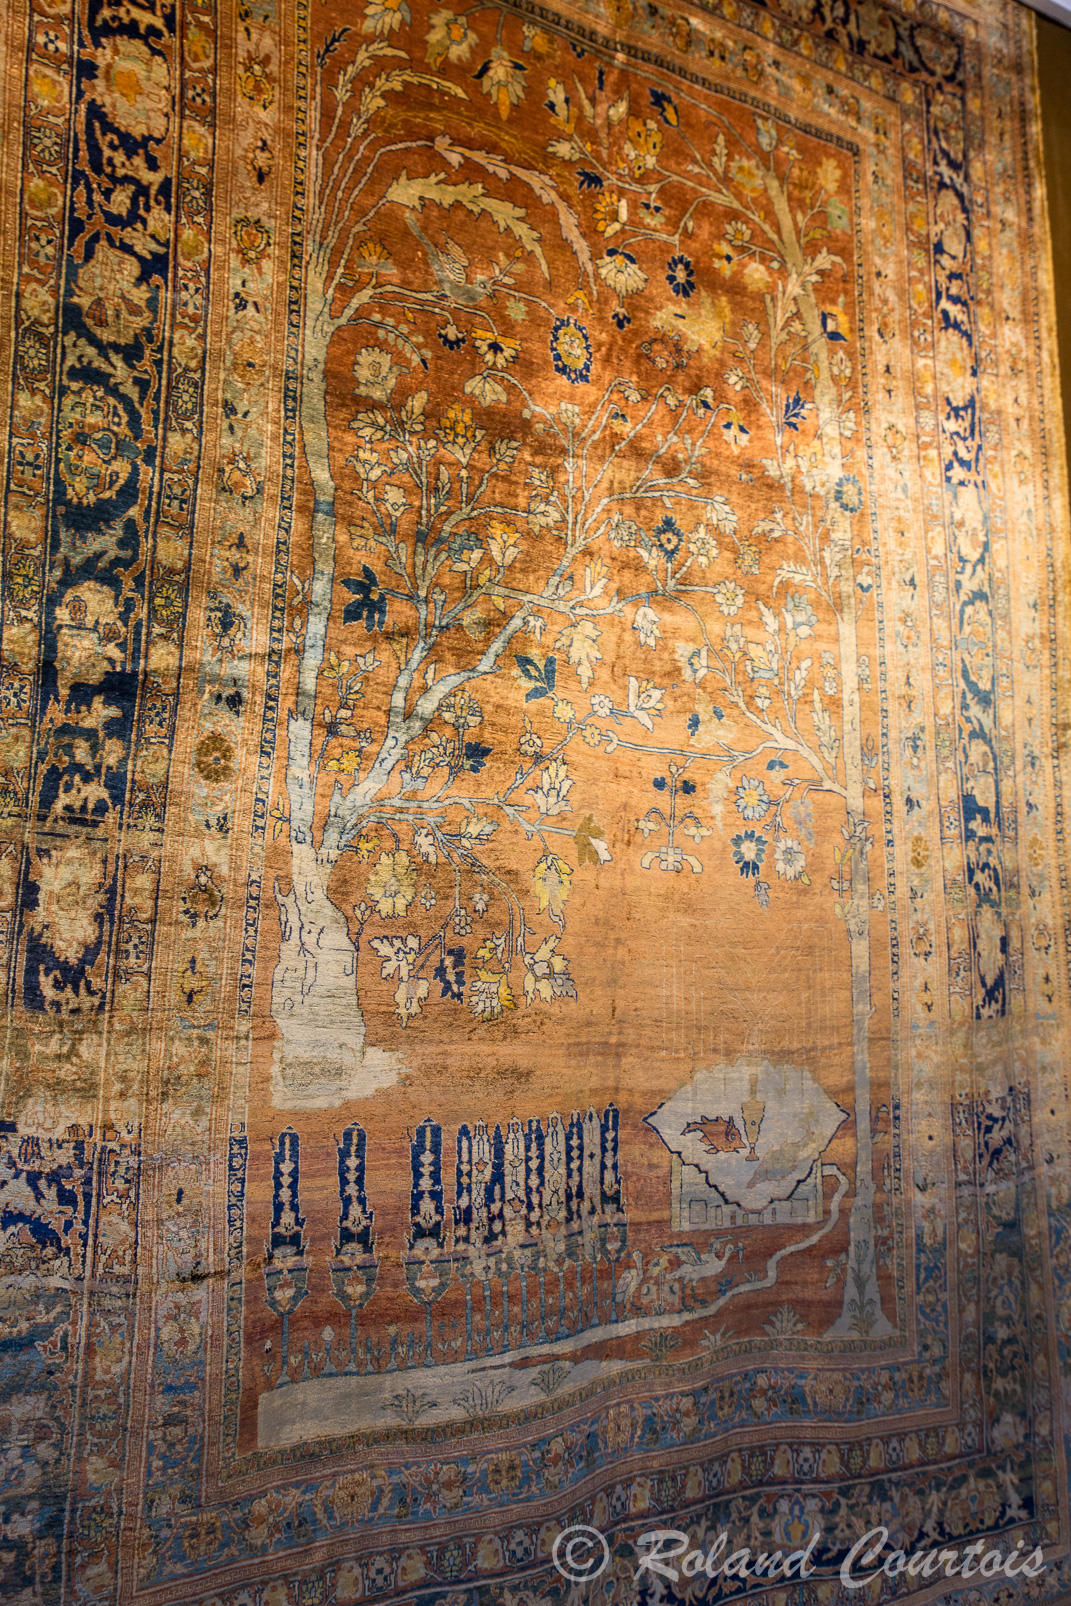 Plusieurs tapis sont en soie, les médaillons peuvent représenter un jardin persan, des ruisseaux ou des canaux, des personnages, animaux, scènes de chasse et tout cela en motifs stylisés comme sur des gravures persanes.